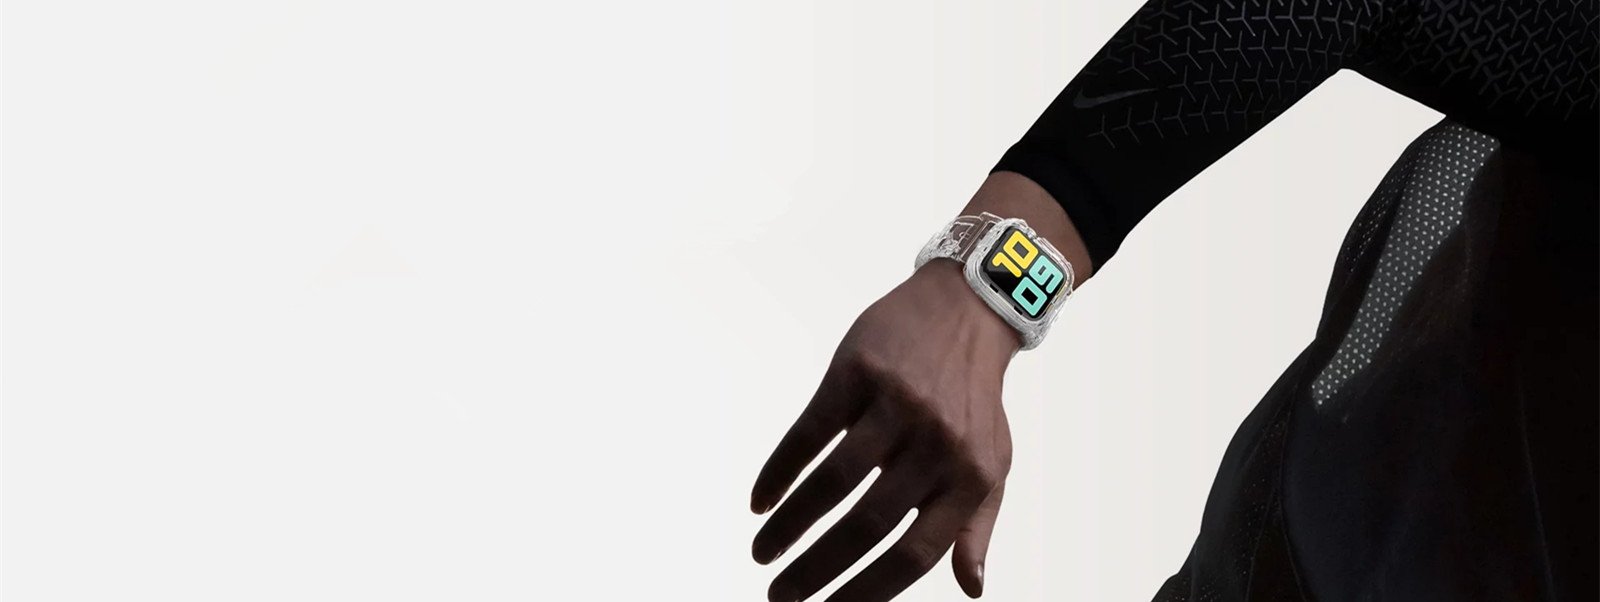 Bracelet en caoutchouc silicone ondulé - Bleu - Apple Watch Ultra 49 mm -  Acheter sur PhoneLook